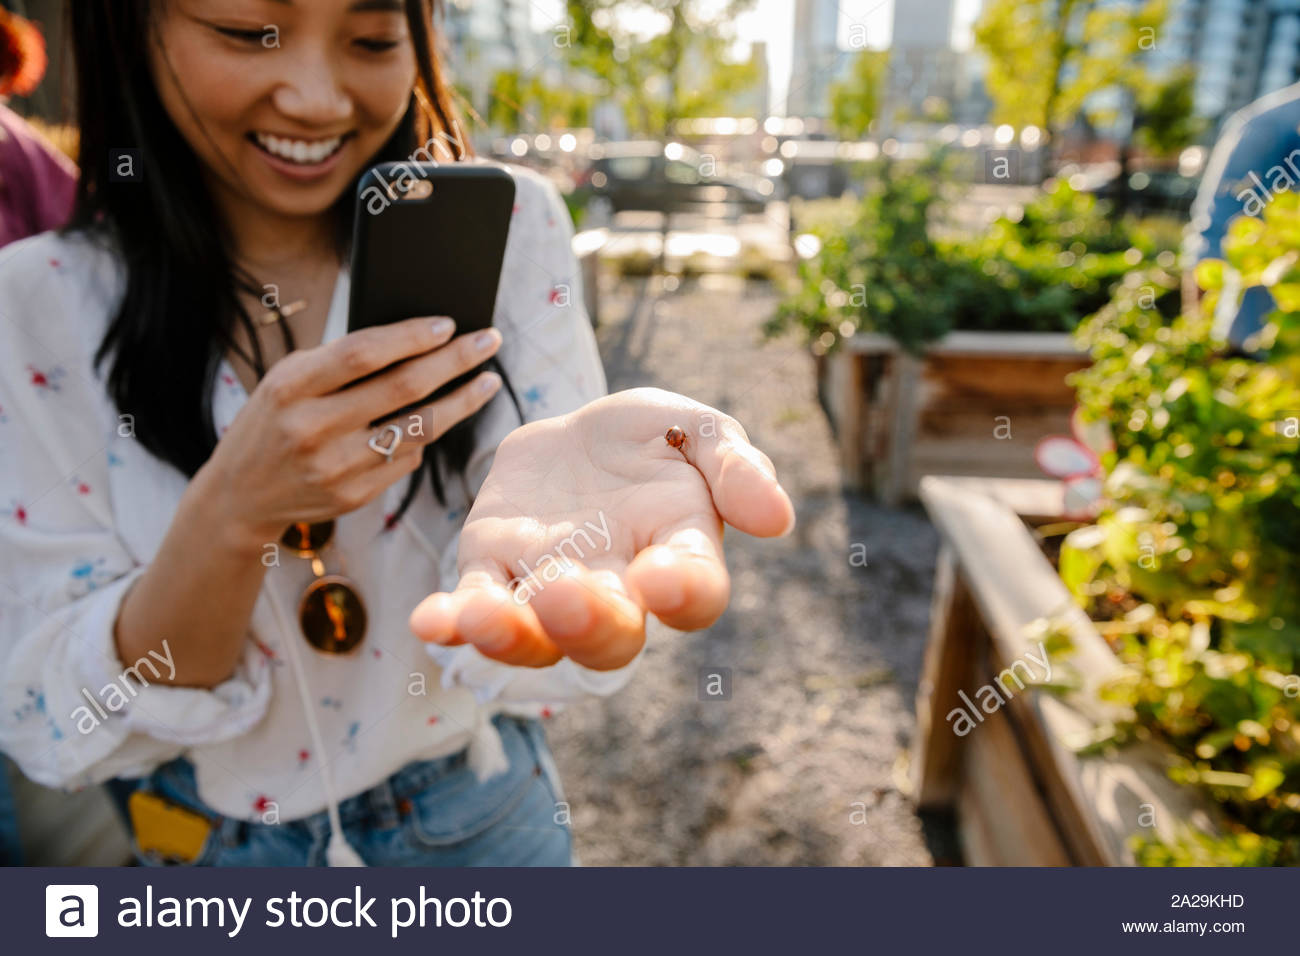 Junge Frau mit Kamera Handy fotografieren Marienkäfer in Gemeinschaft garten Stockfoto